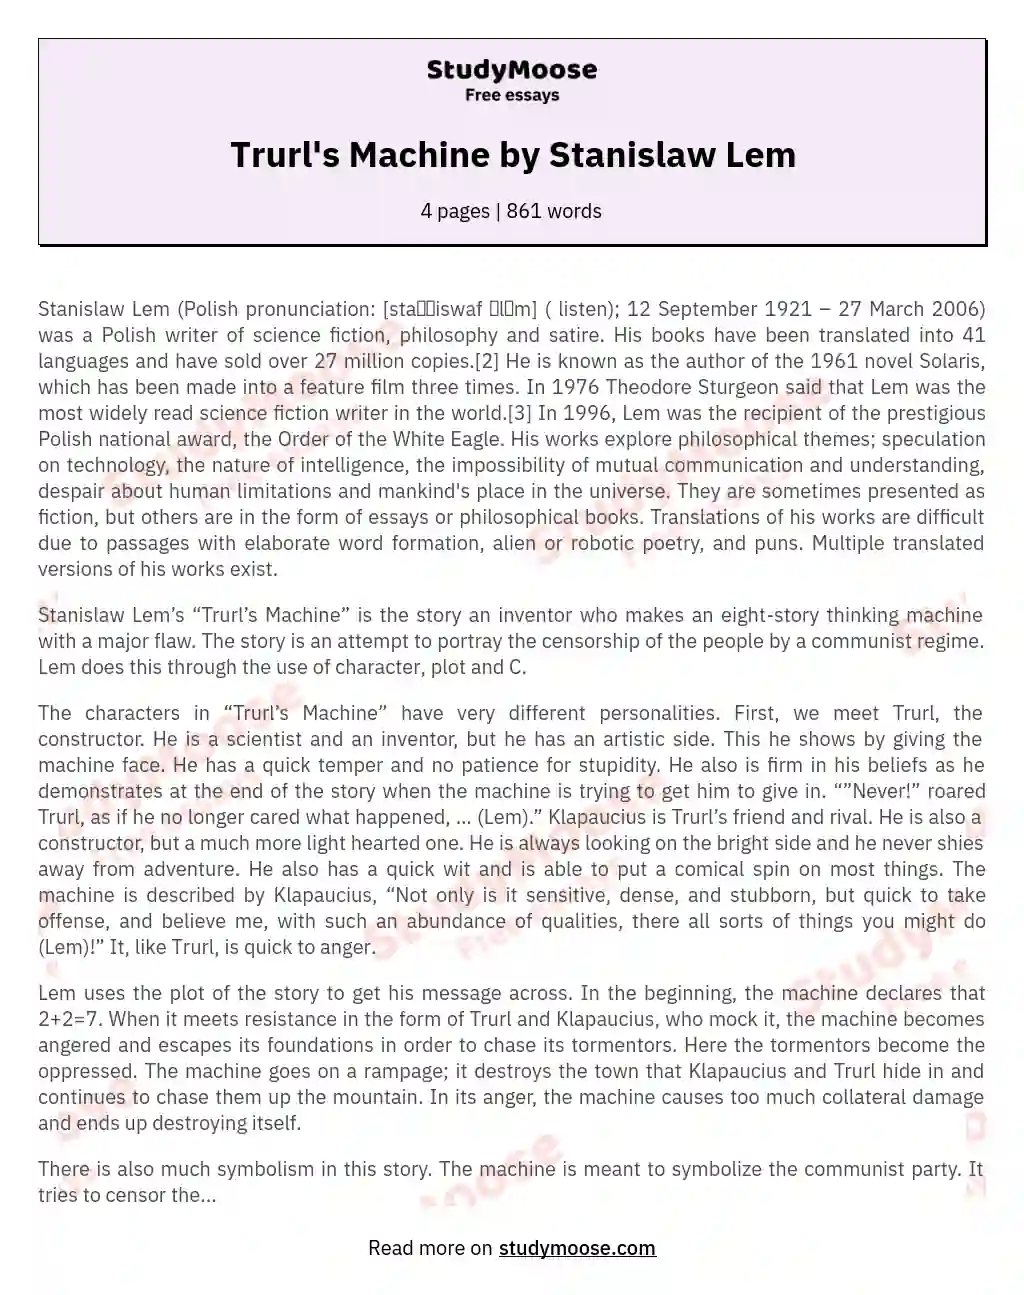 Trurl's Machine by Stanislaw Lem essay